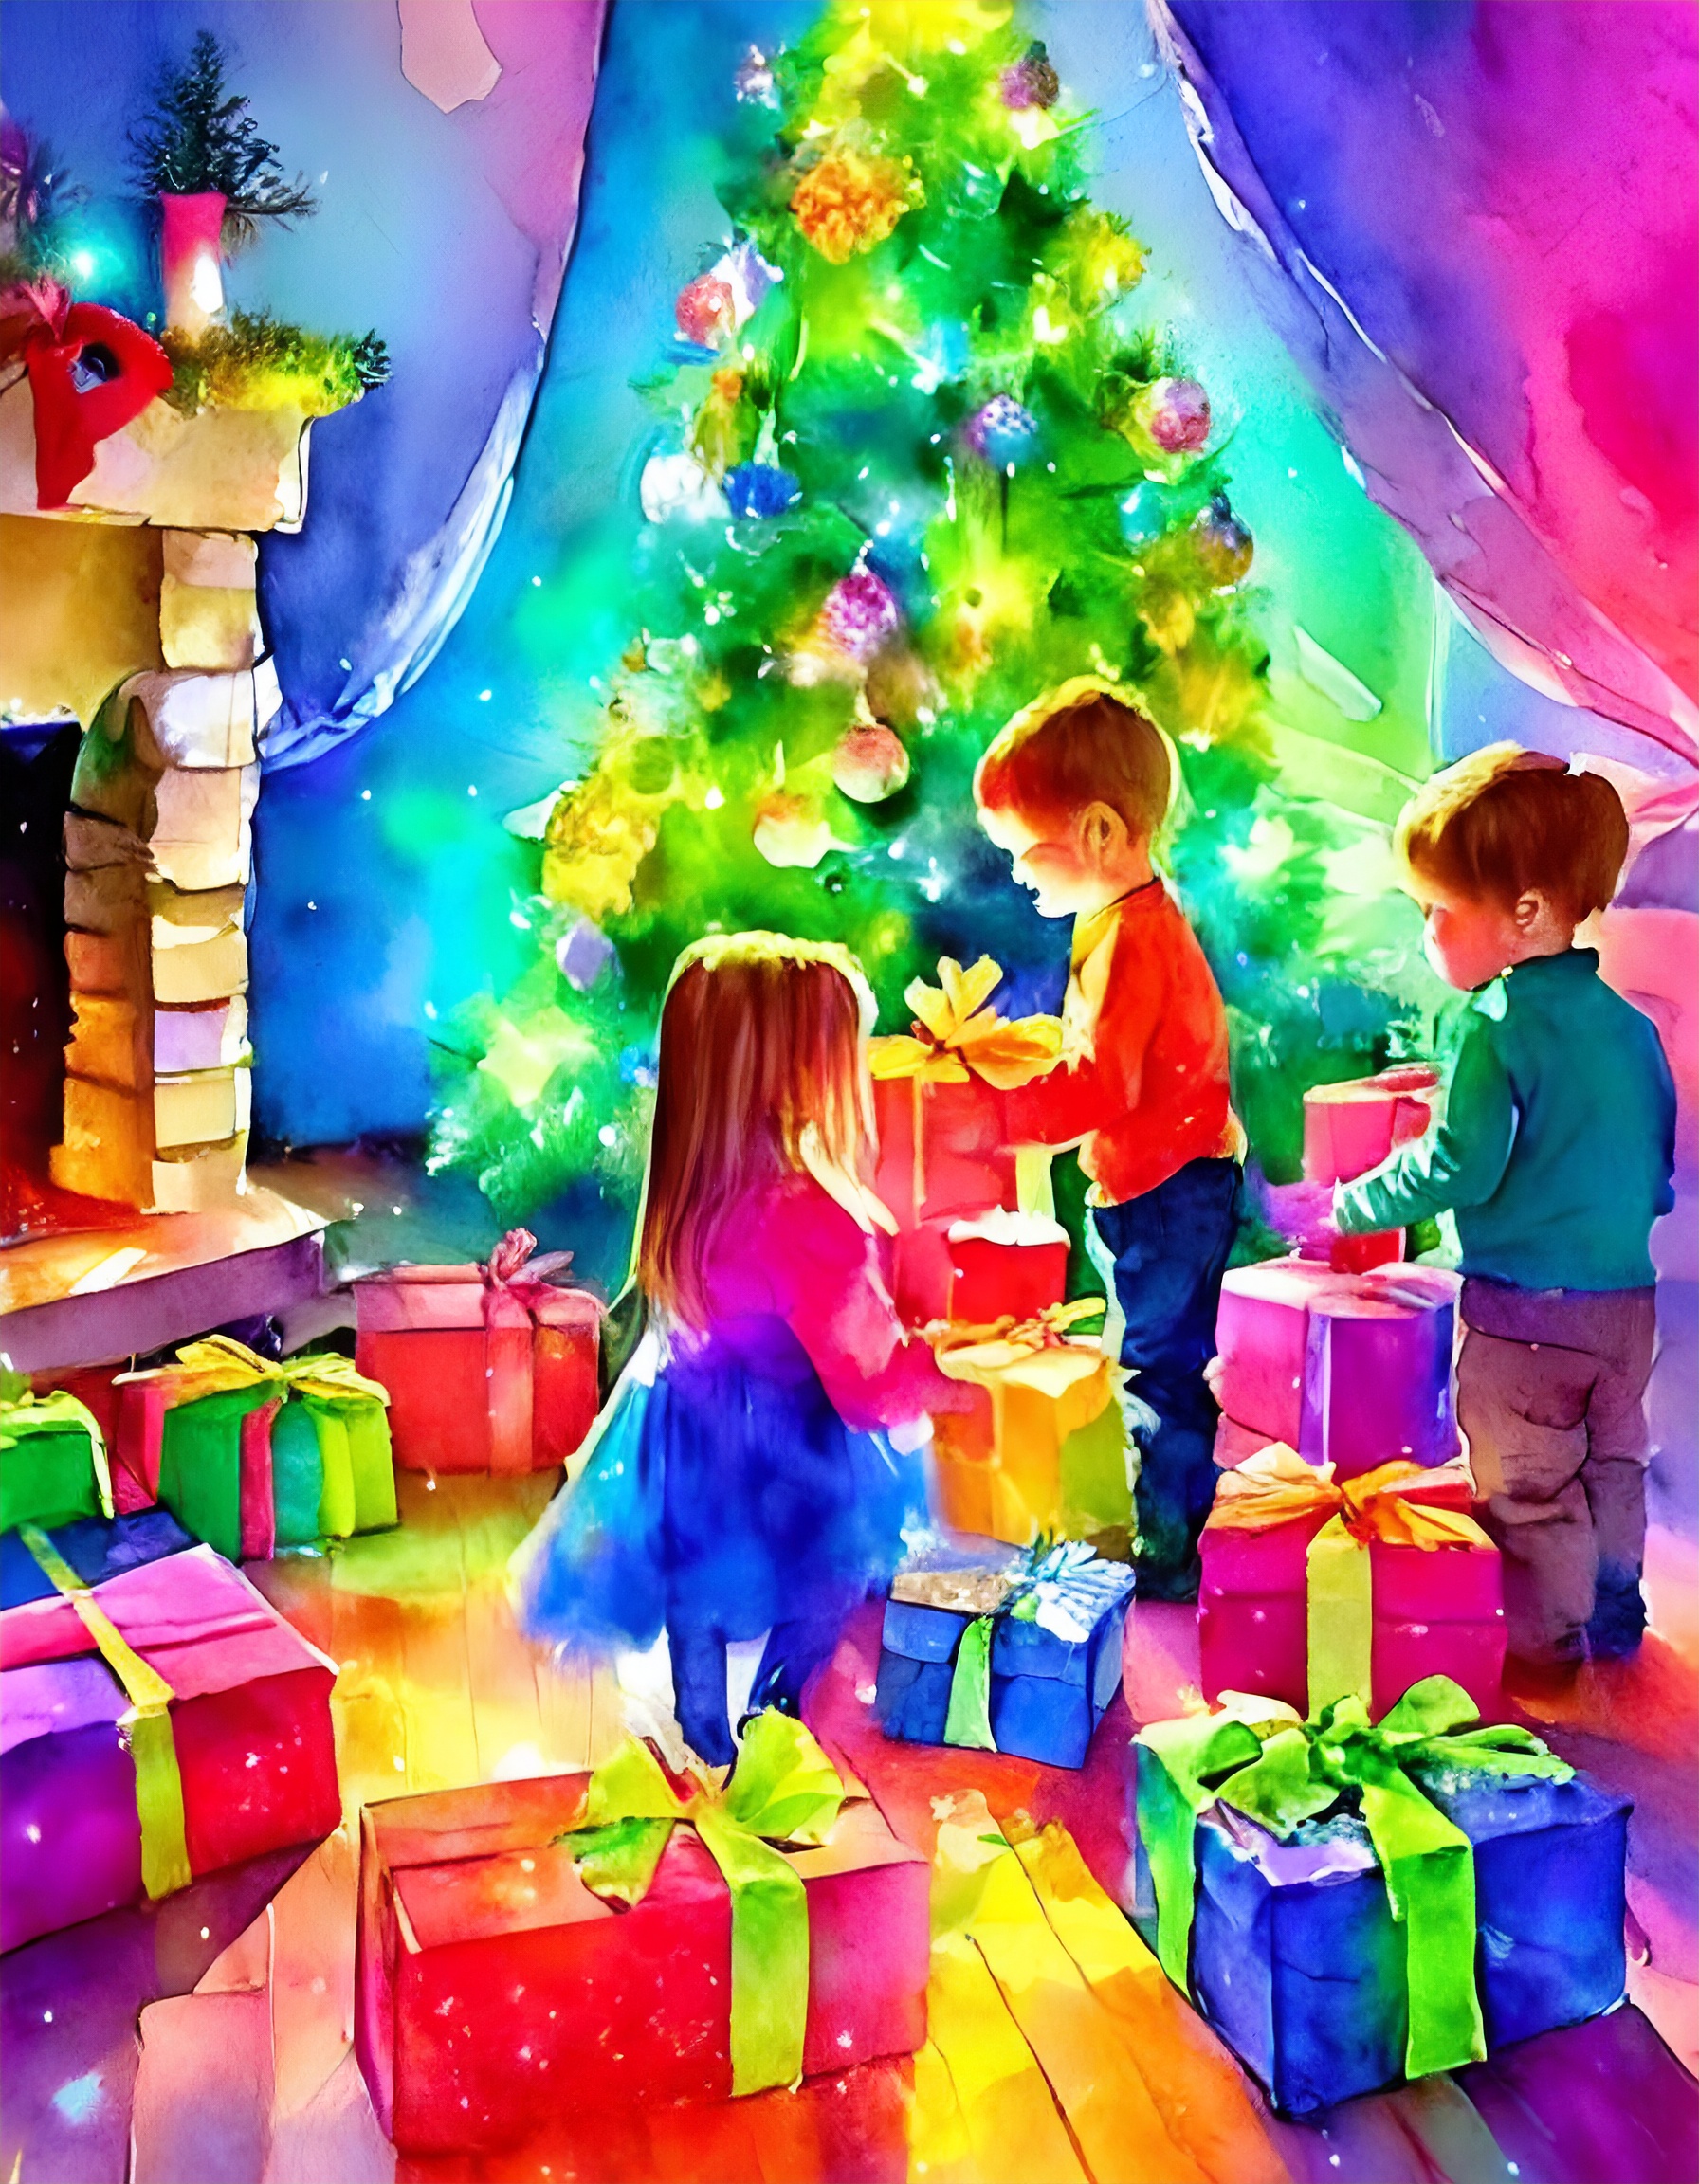 Noël, le partage des objets et de l'amour